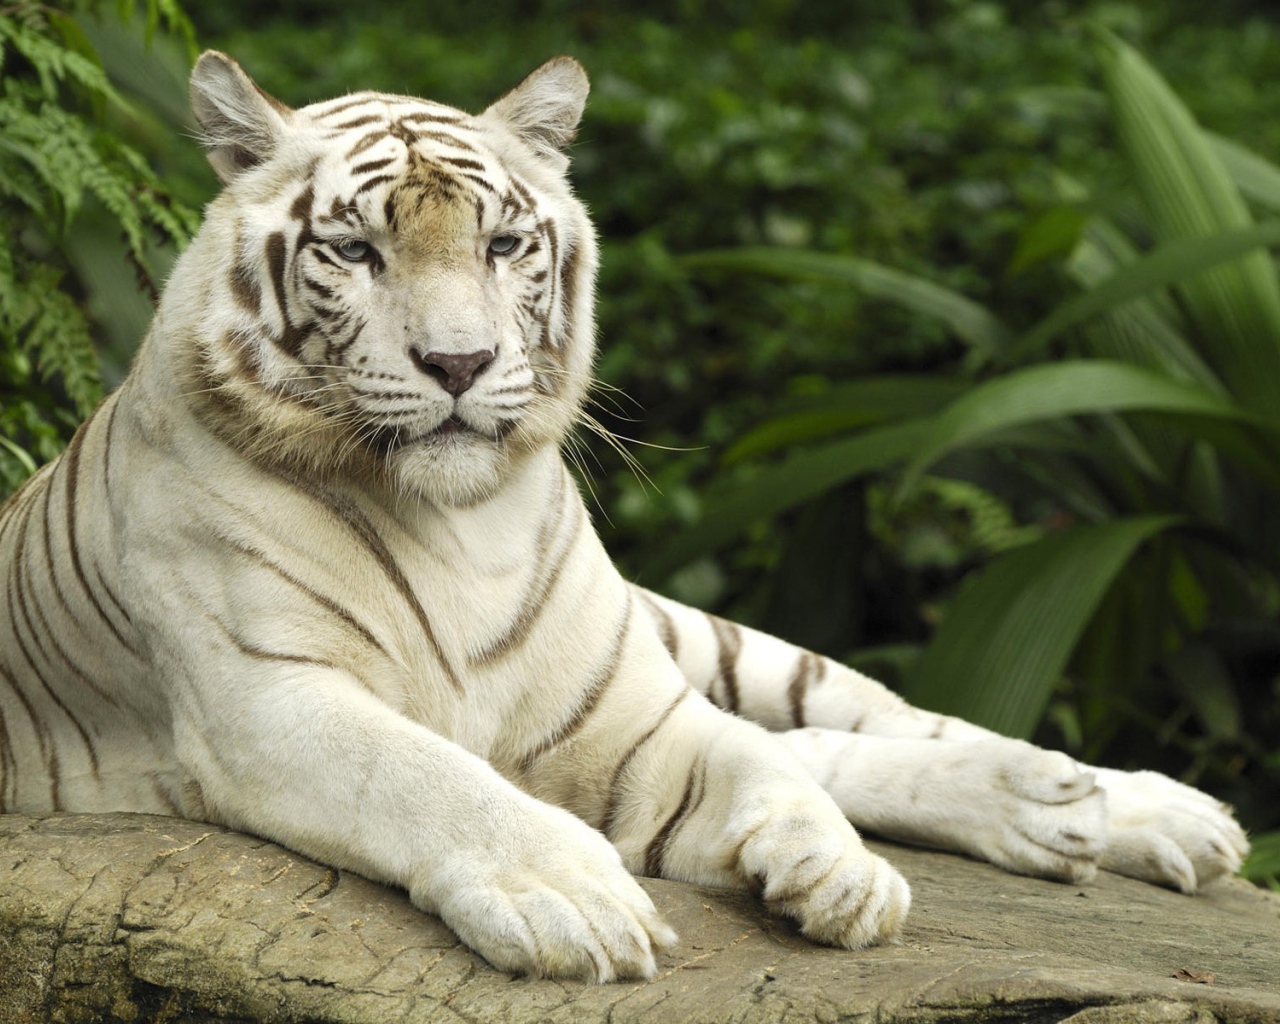 Tiger panthera tigris singapore